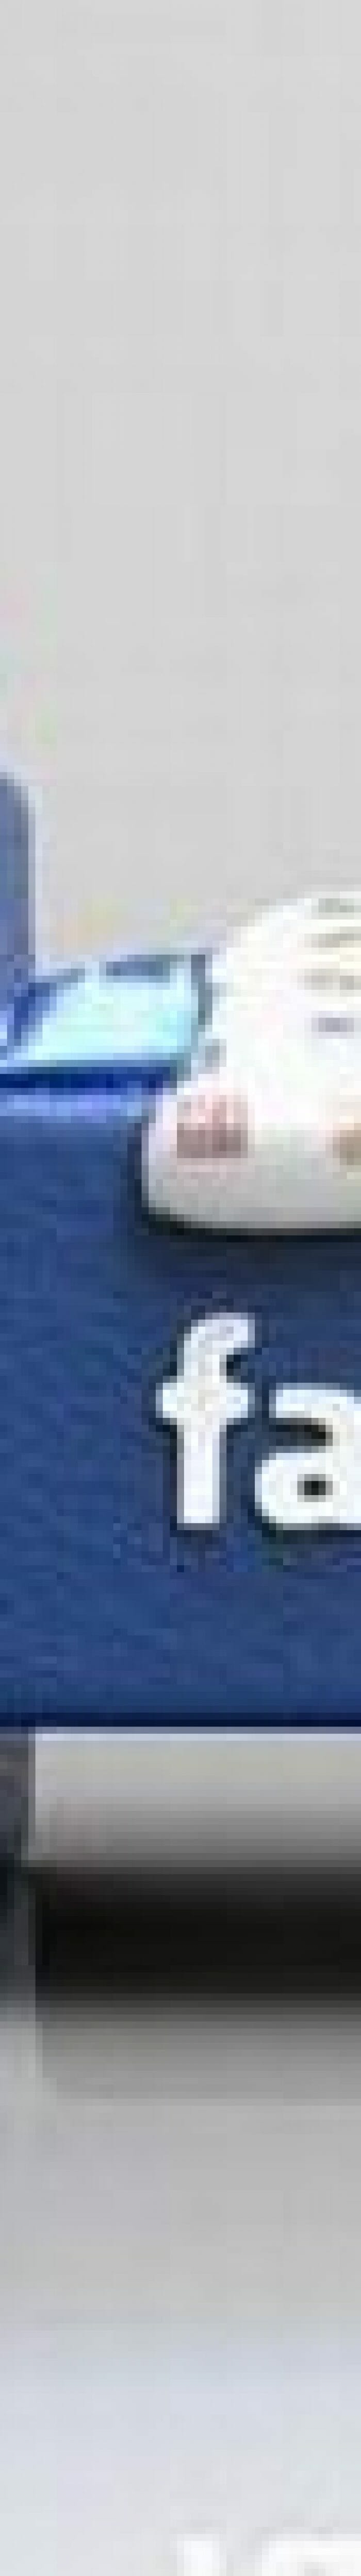 Cama Facebook: Eu curti, e você?